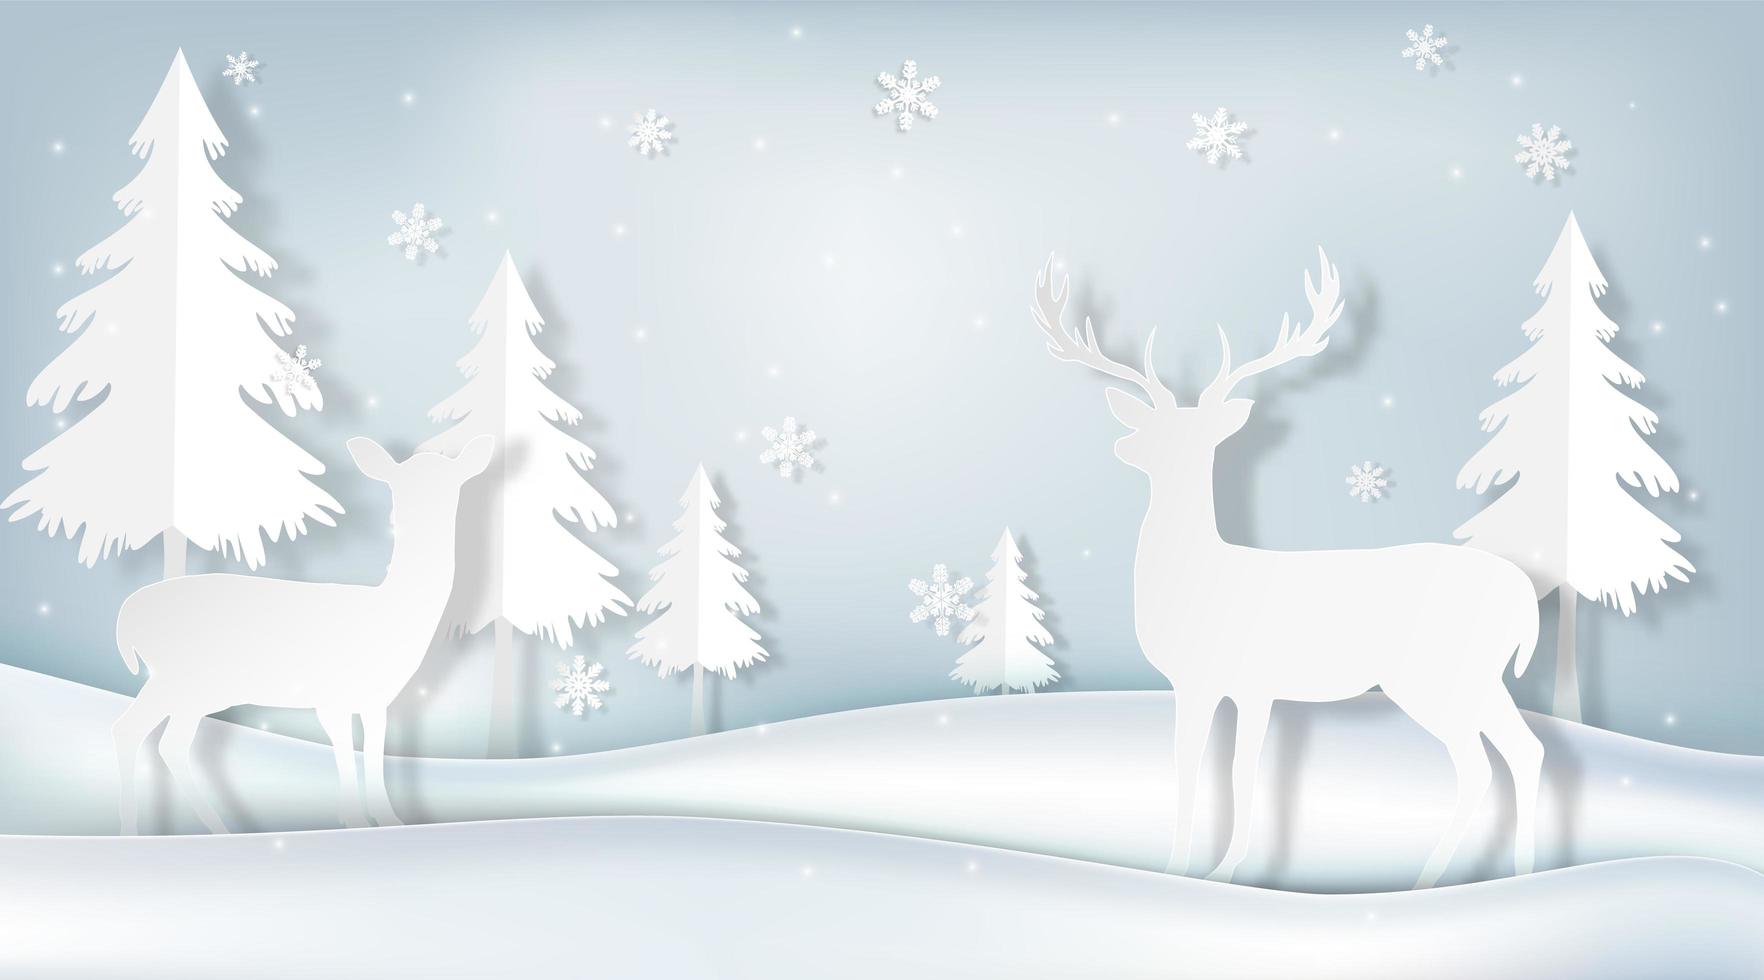 Paper art of deer in winter scene vector